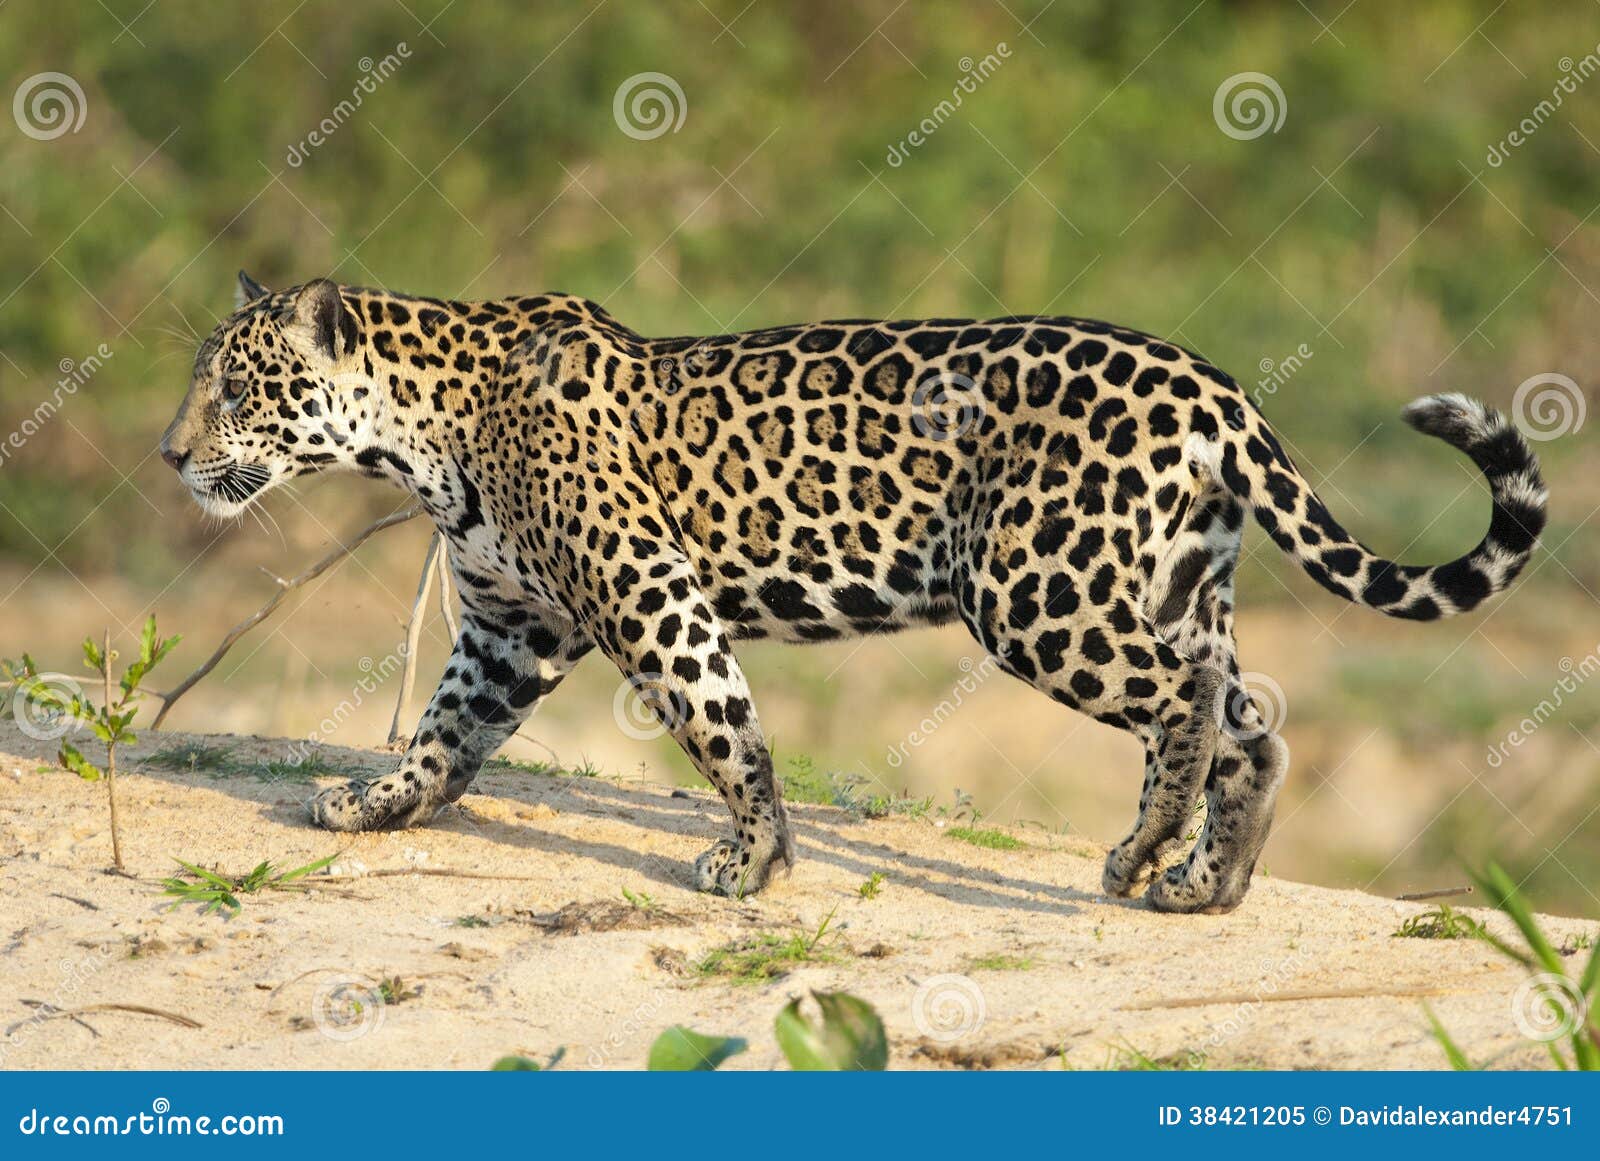 jaguar, panthera onca